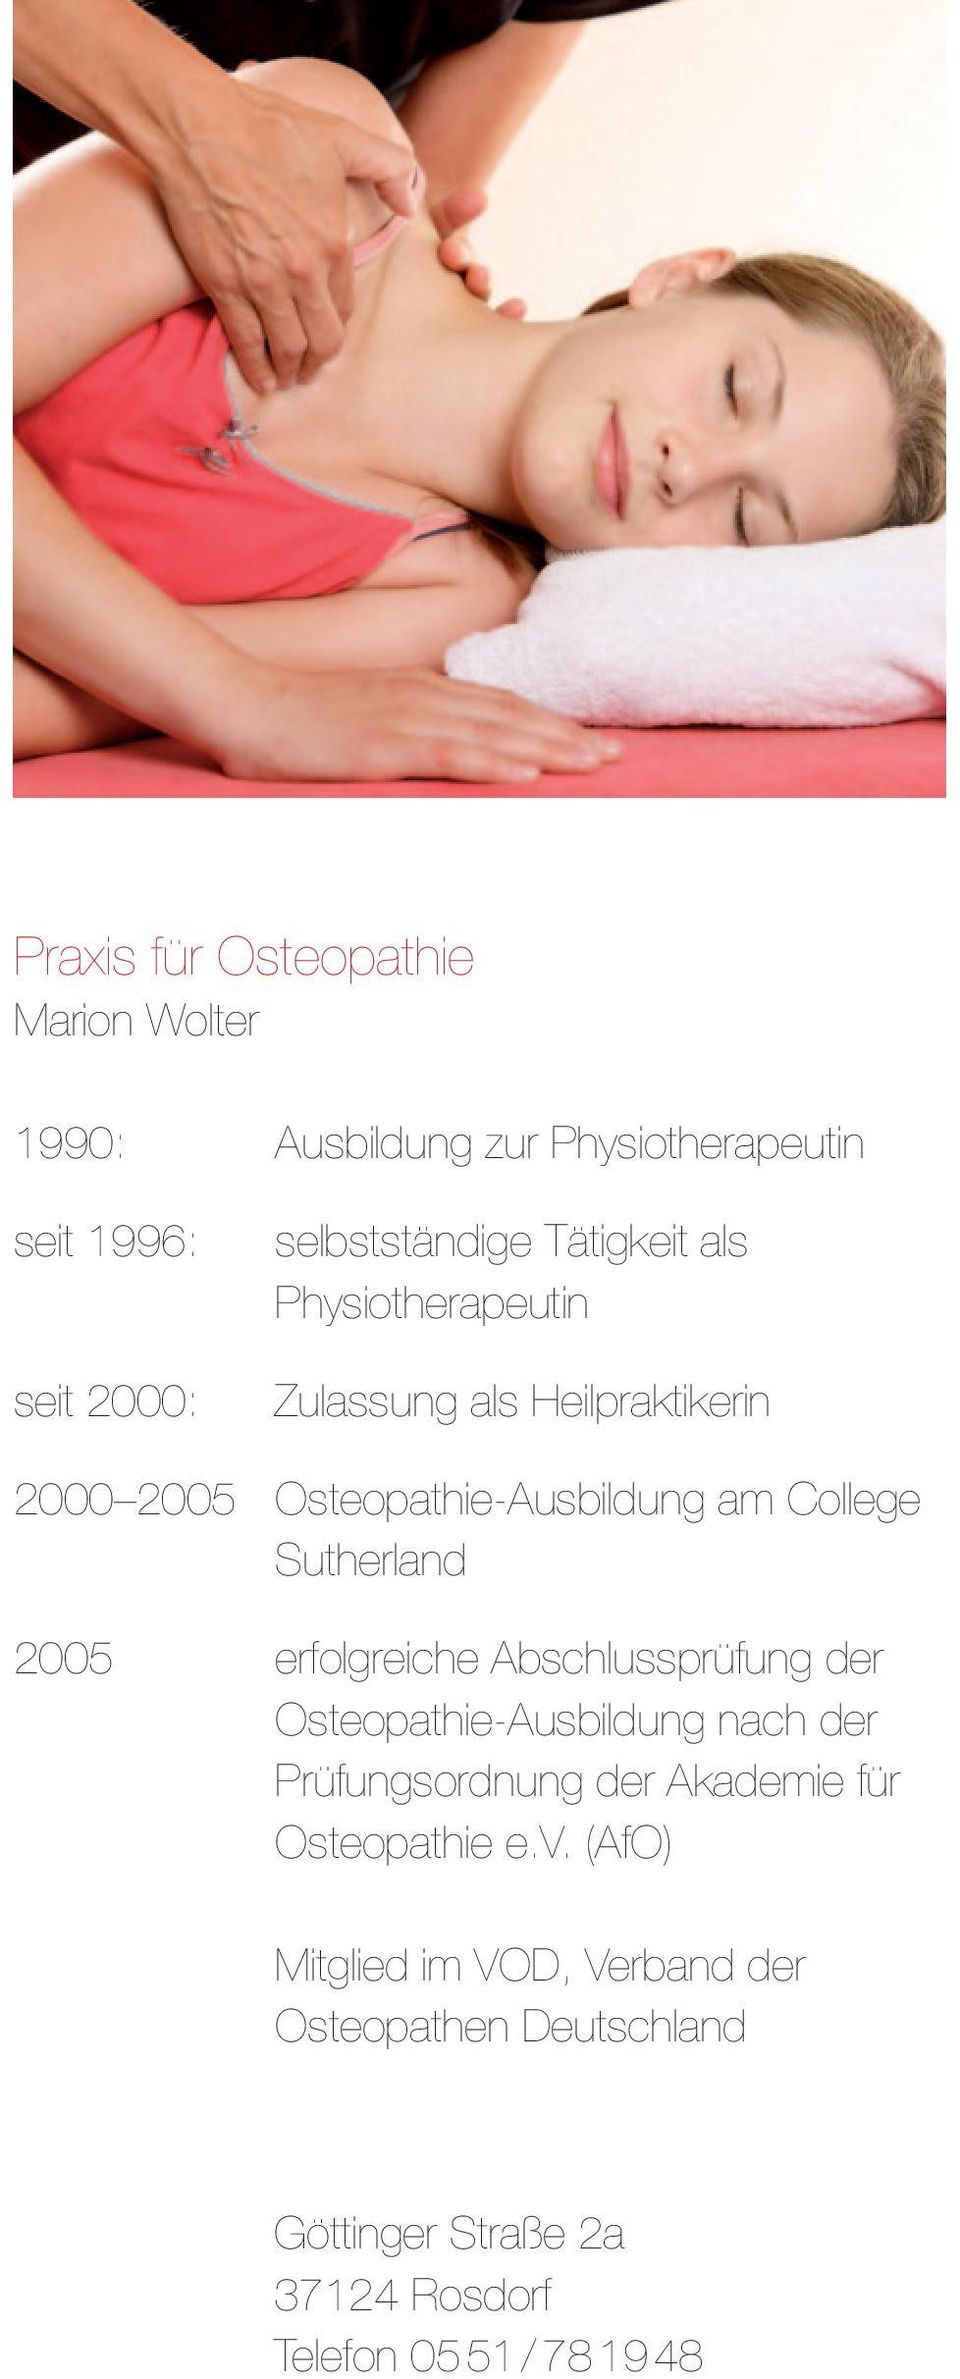 2005 erfolgreiche Abschlussprüfung der Osteopathie-Ausbildung nach der Prüfungsordnung der Akademie für Osteopathie e.